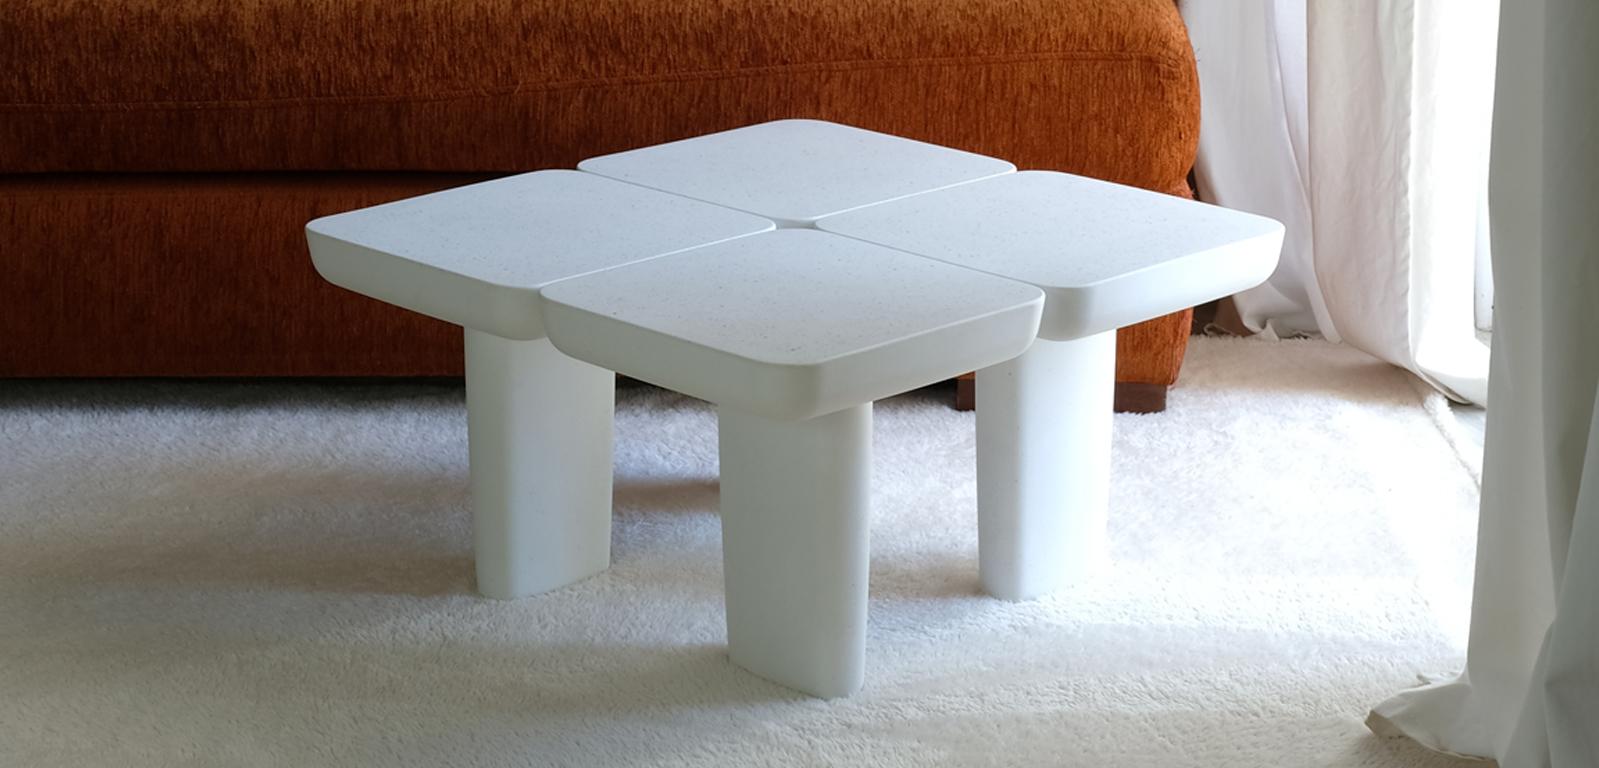 La MESA HOJA forma parte de nuestra colección de objetos monomateriales. Esta mesa baja sencilla y minimalista es a la vez humilde y atrevida, con un elegante sentido de la proporción y el equilibrio.

Diseño: Alentes Atelier 
Material: Piedra